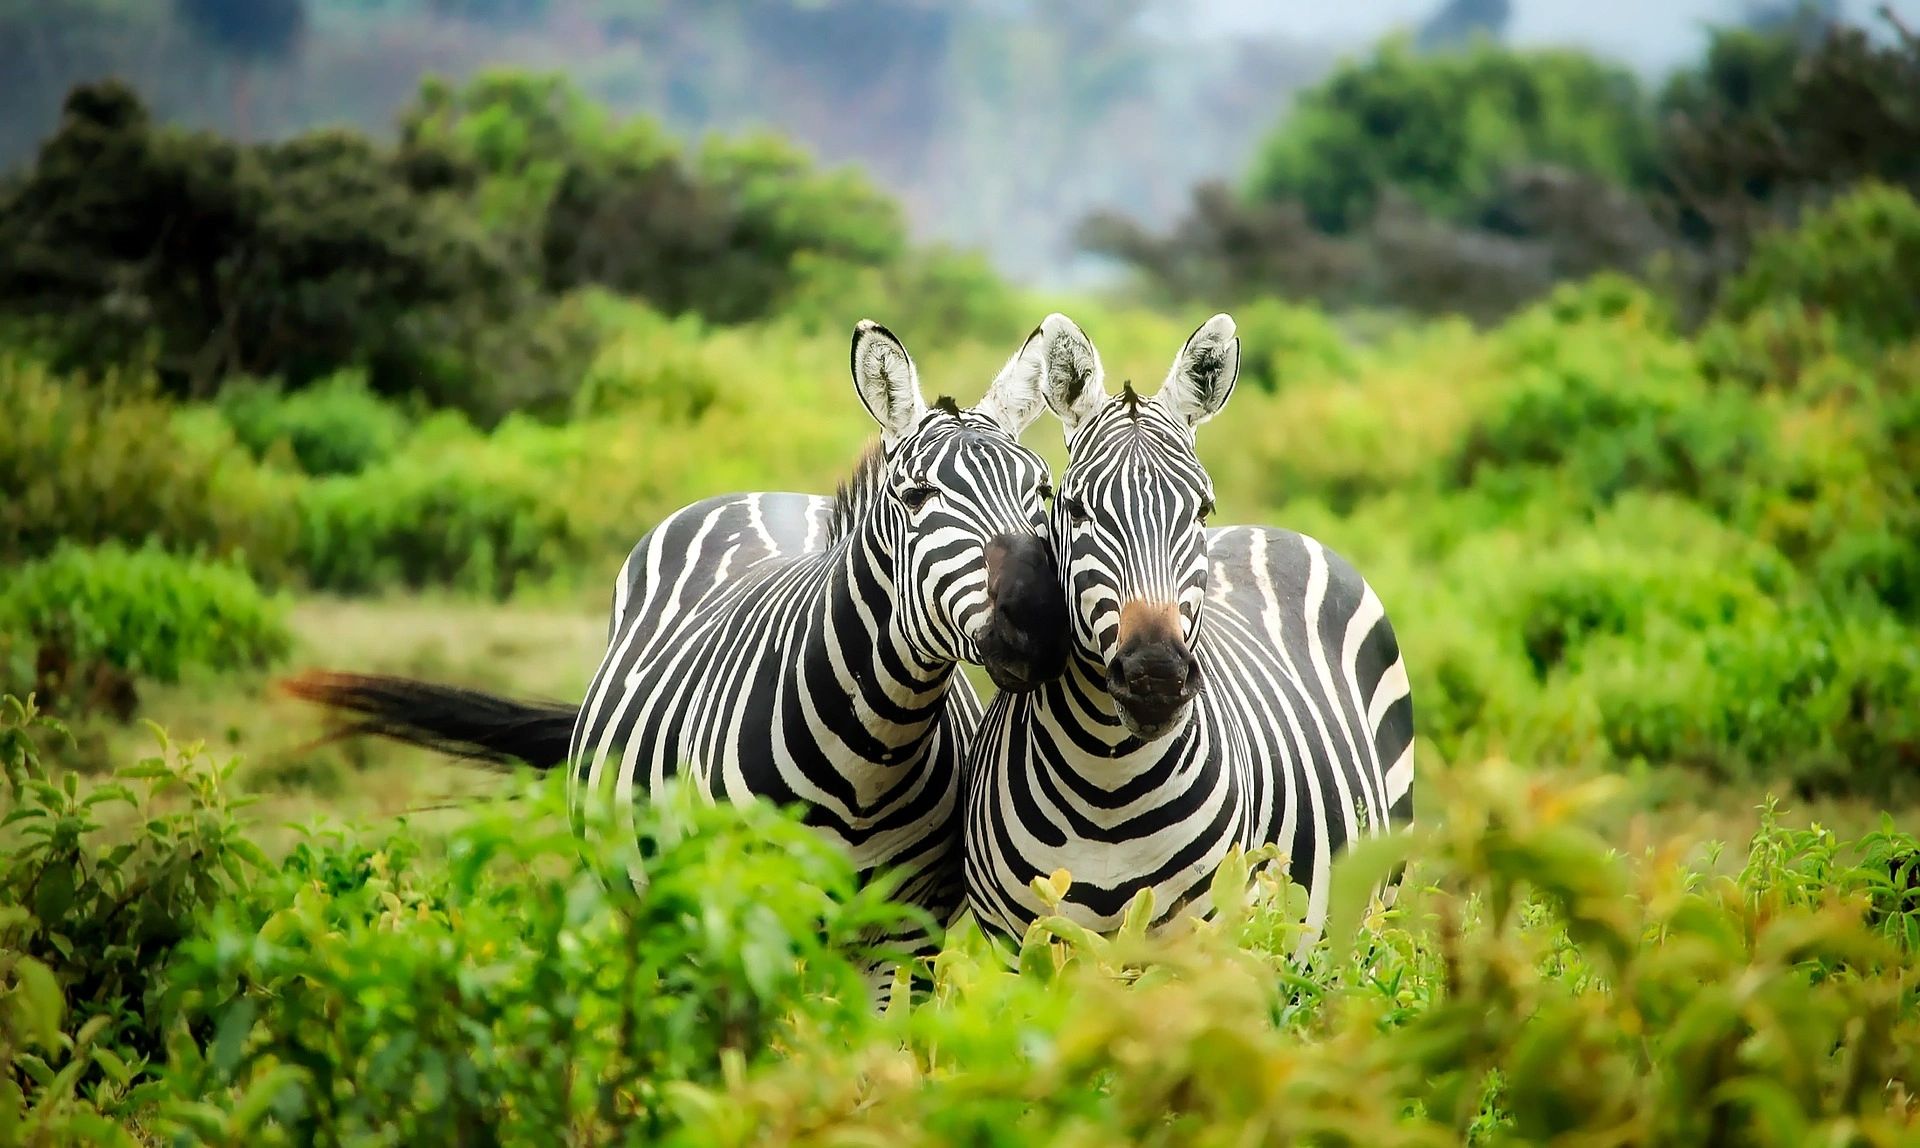 kenya wildlife safari - Zebras